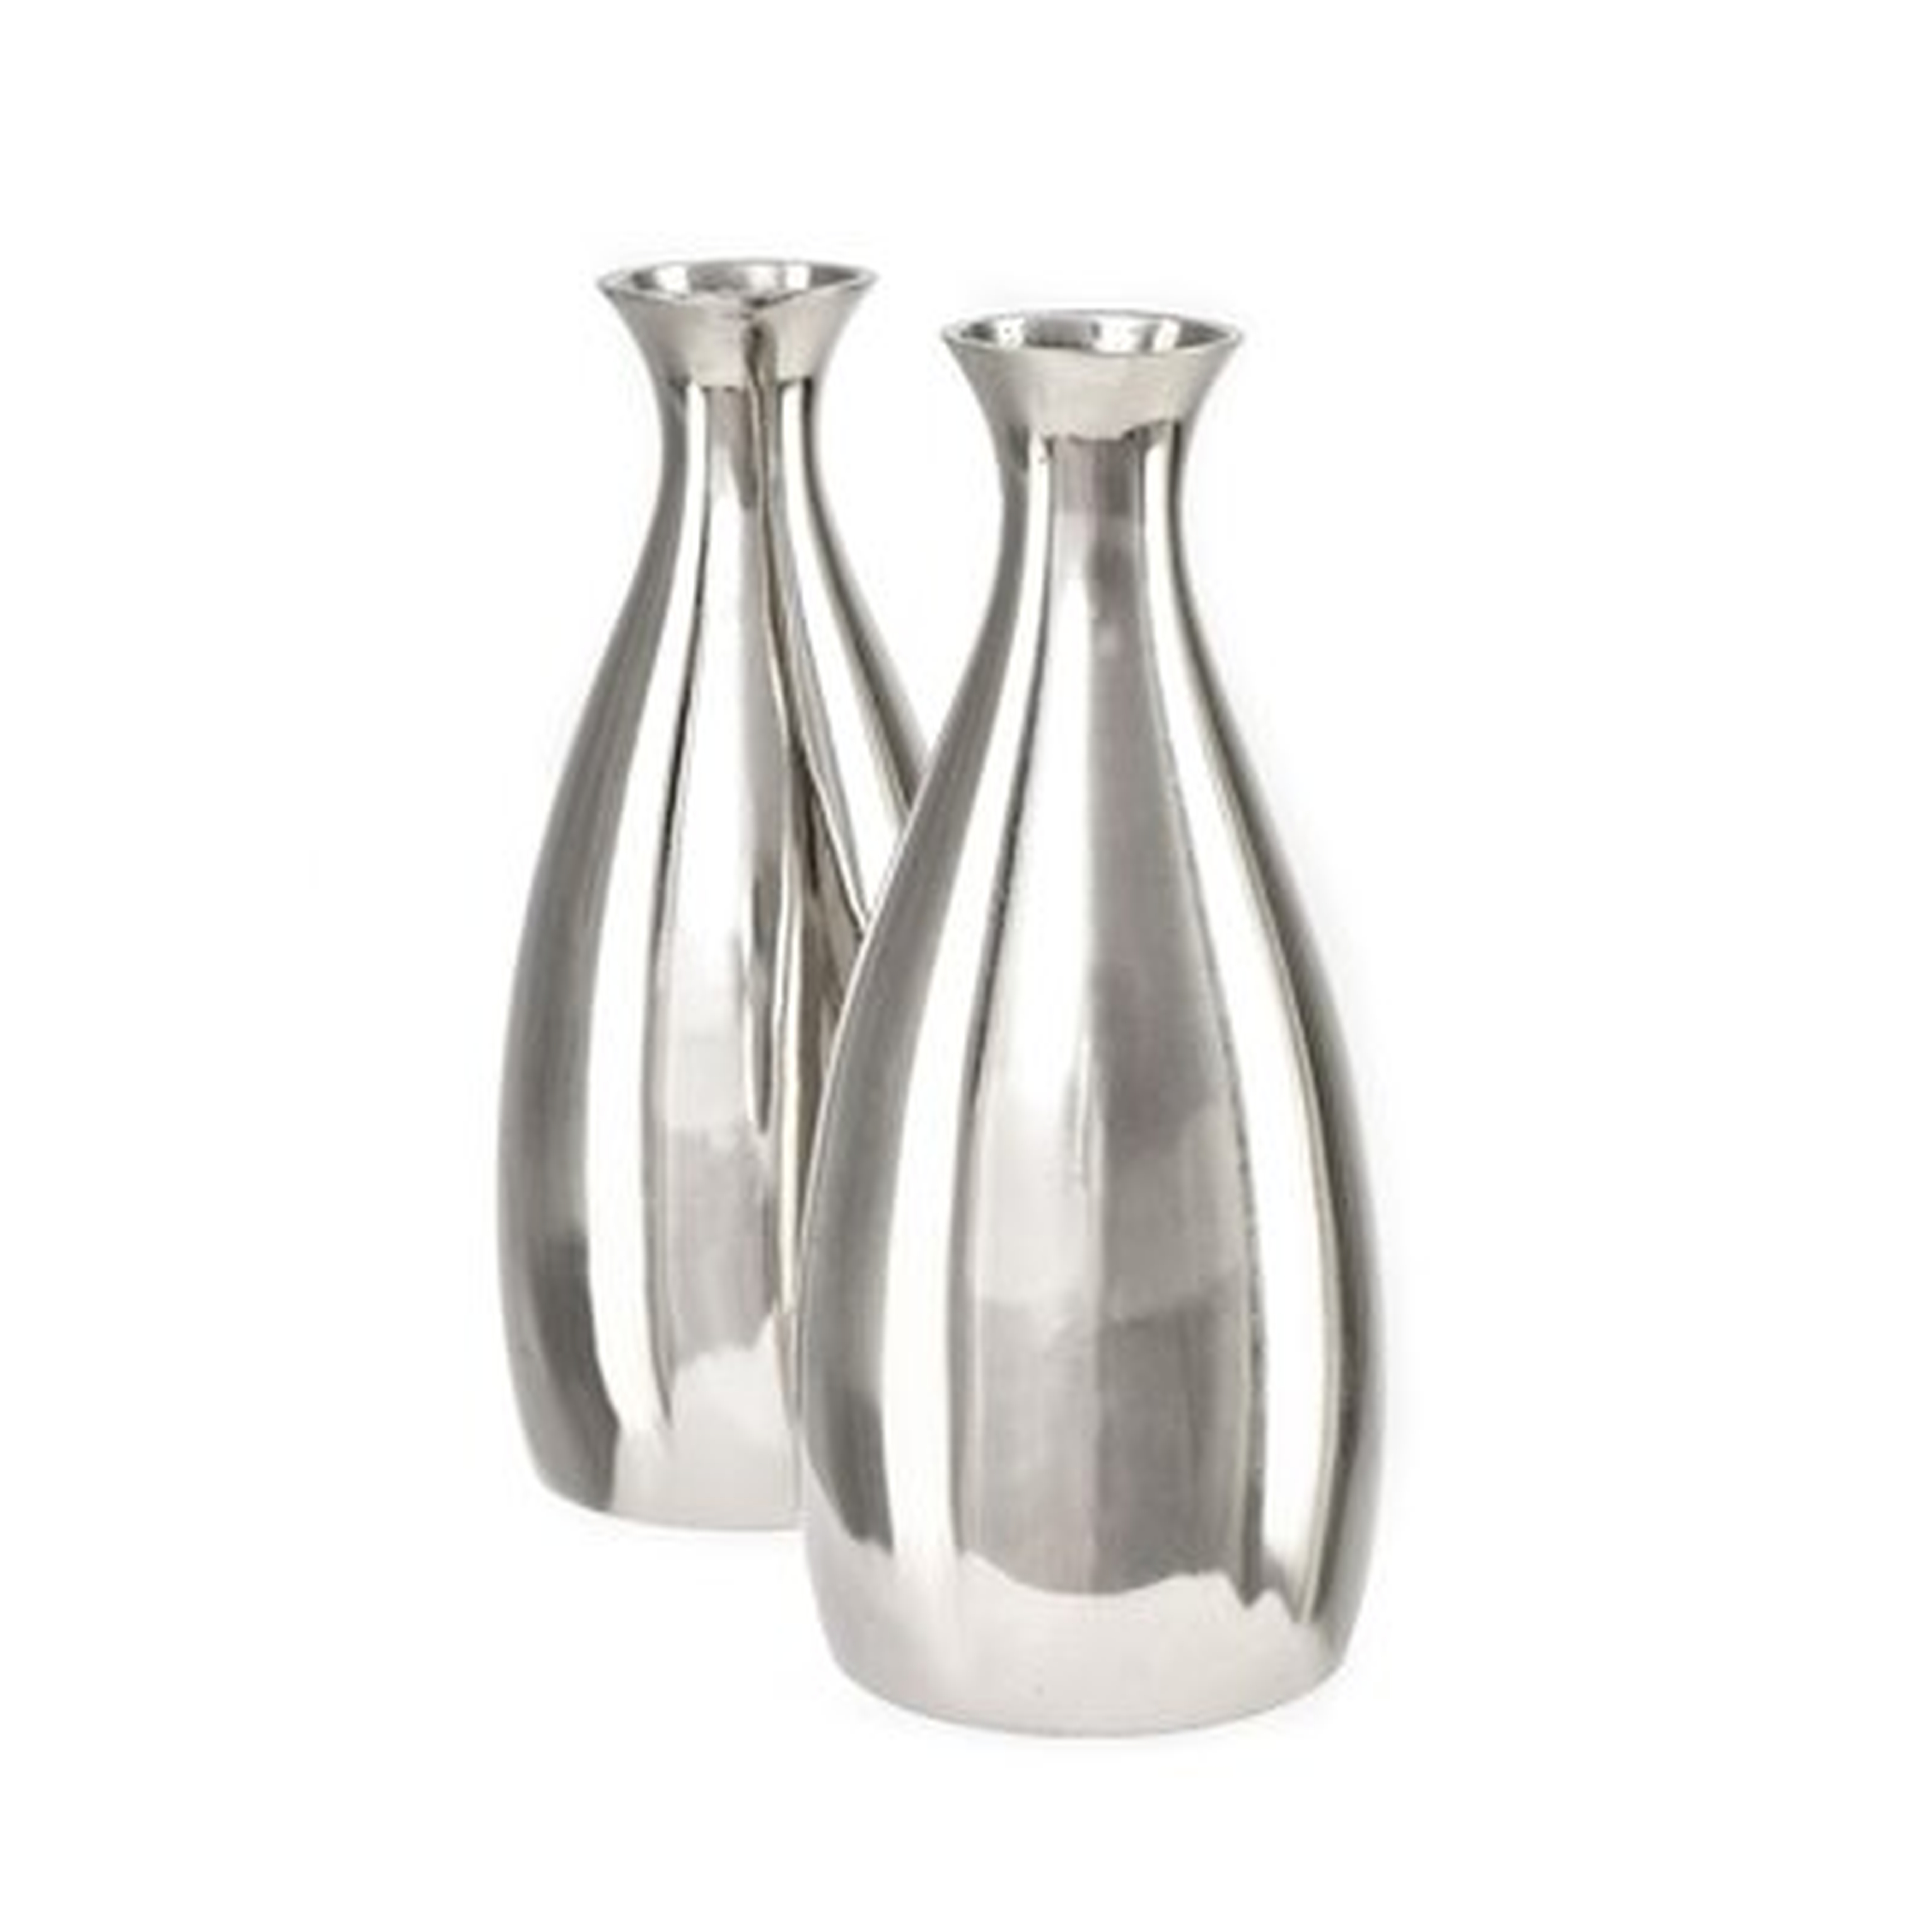 Orren Ellis Polished Aluminum With Nickel Finish Silver Bud Vase, Set Of 2 - Wayfair